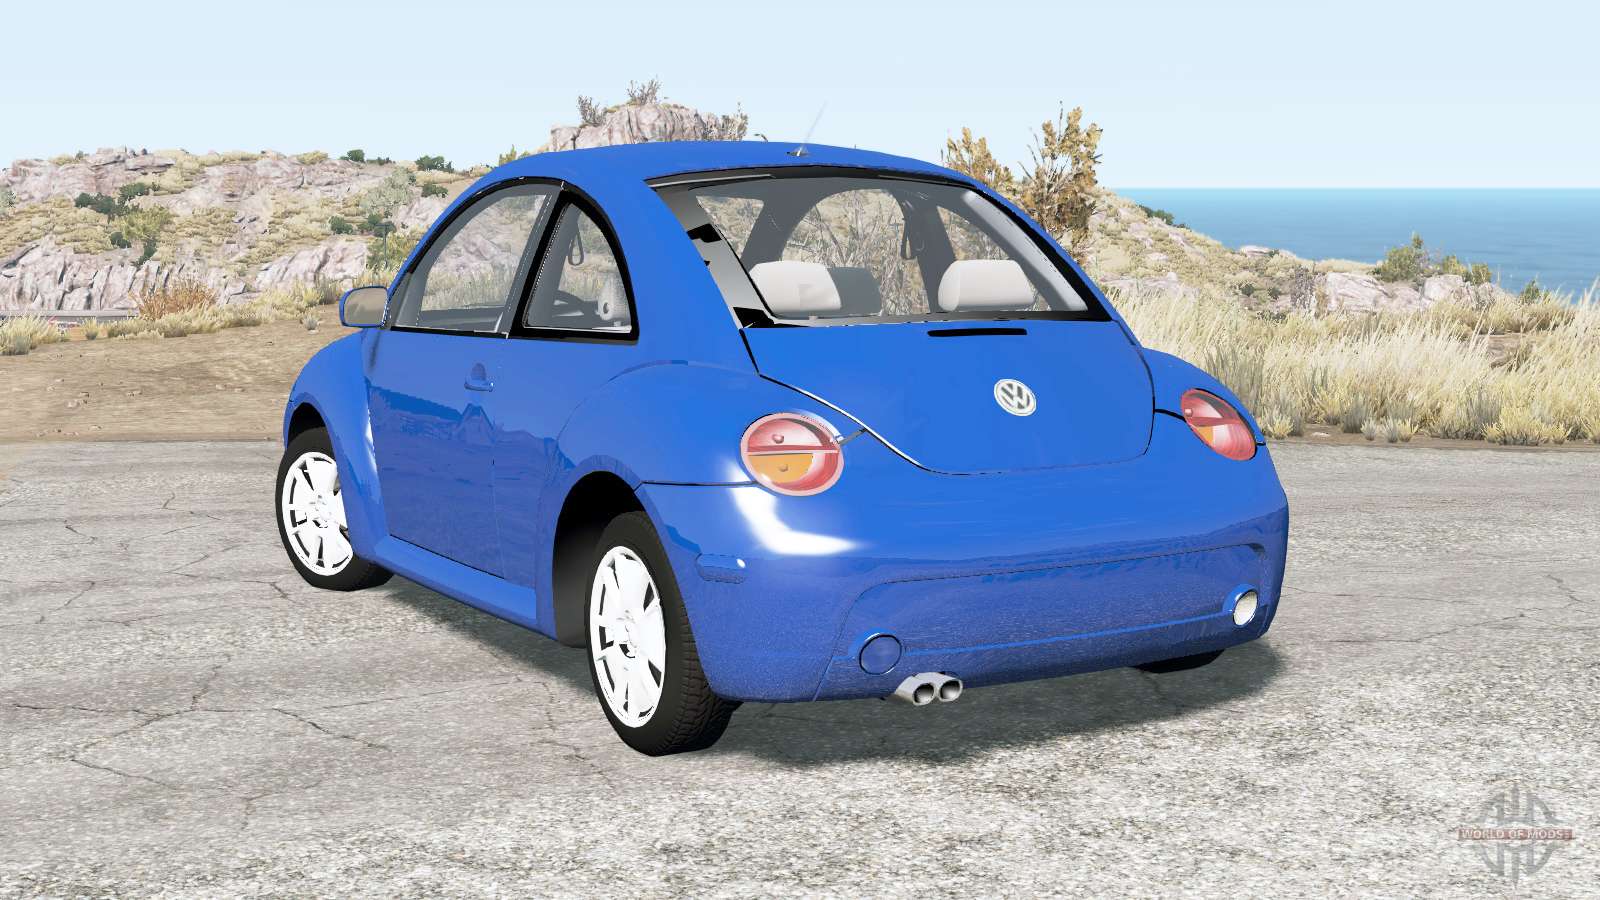 Volkswagen New Beetle Turbo S 2002 para BeamNG Drive